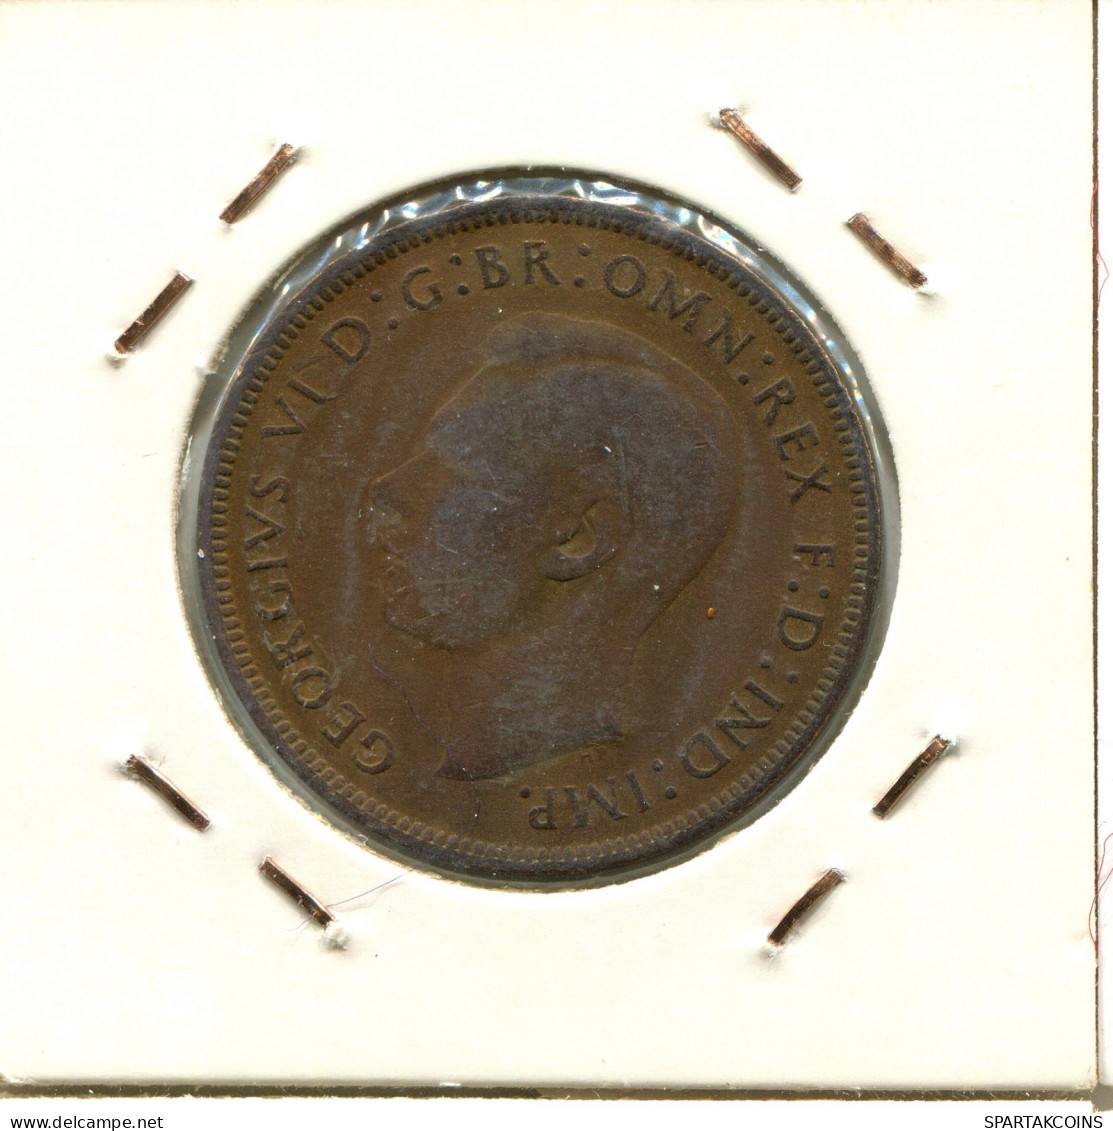 PENNY 1940 UK GBAN BRETAÑA GREAT BRITAIN Moneda #AW080.E.A - D. 1 Penny